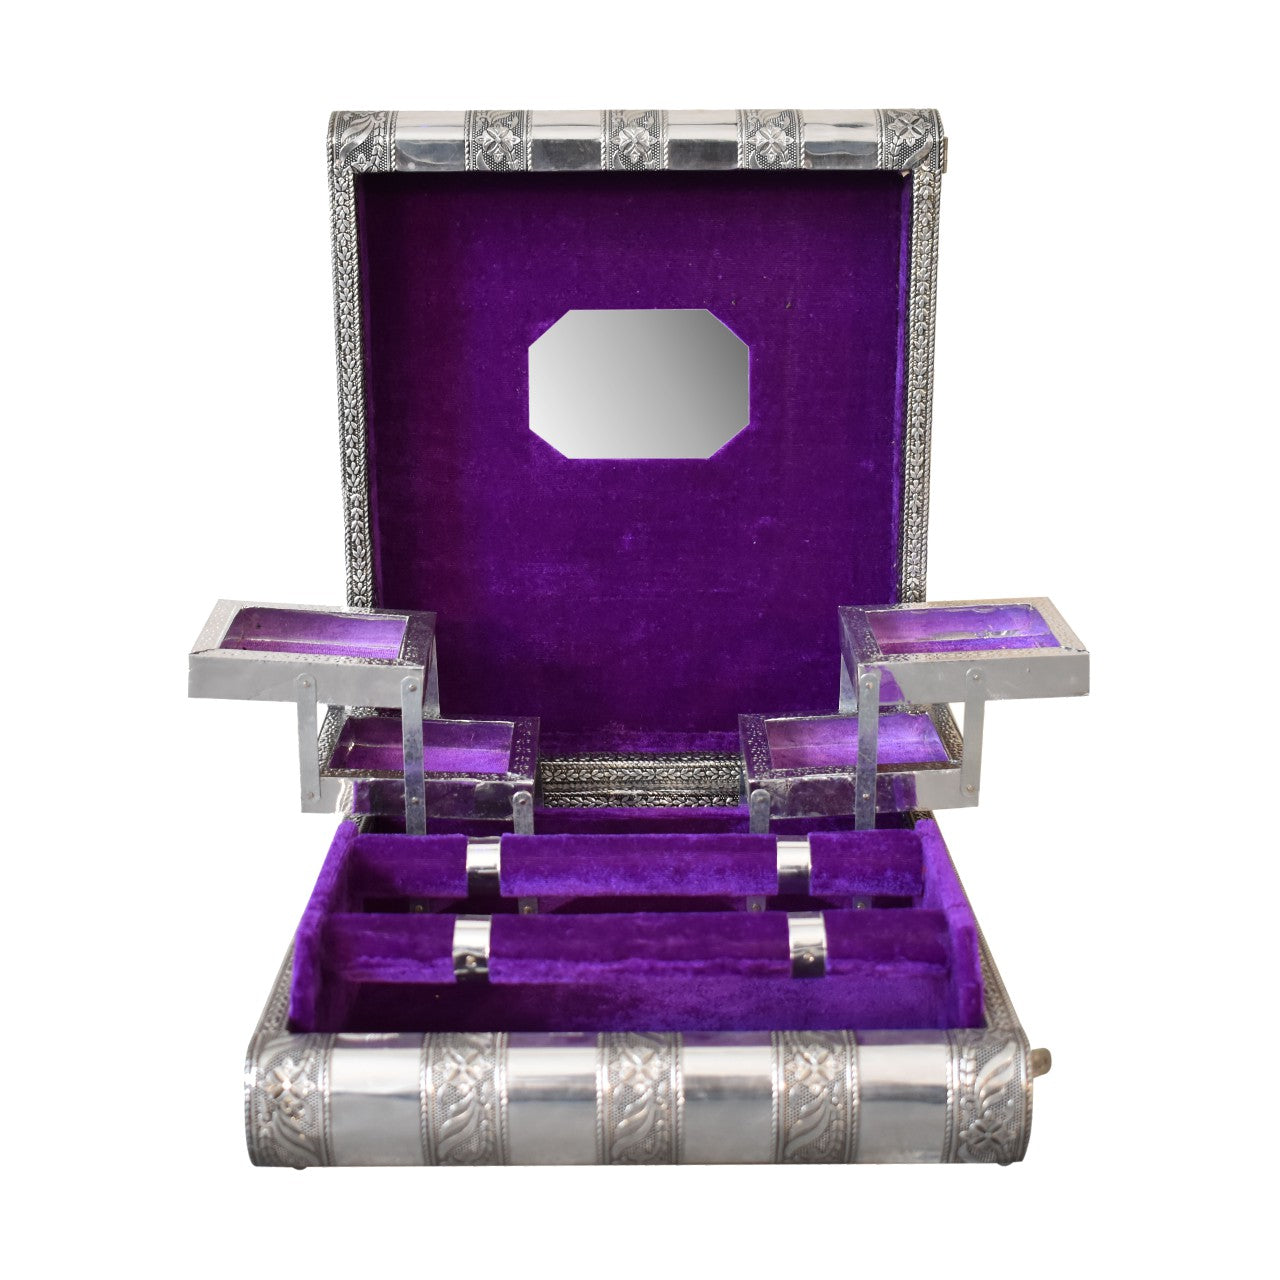 Violet Double Jewellery Box